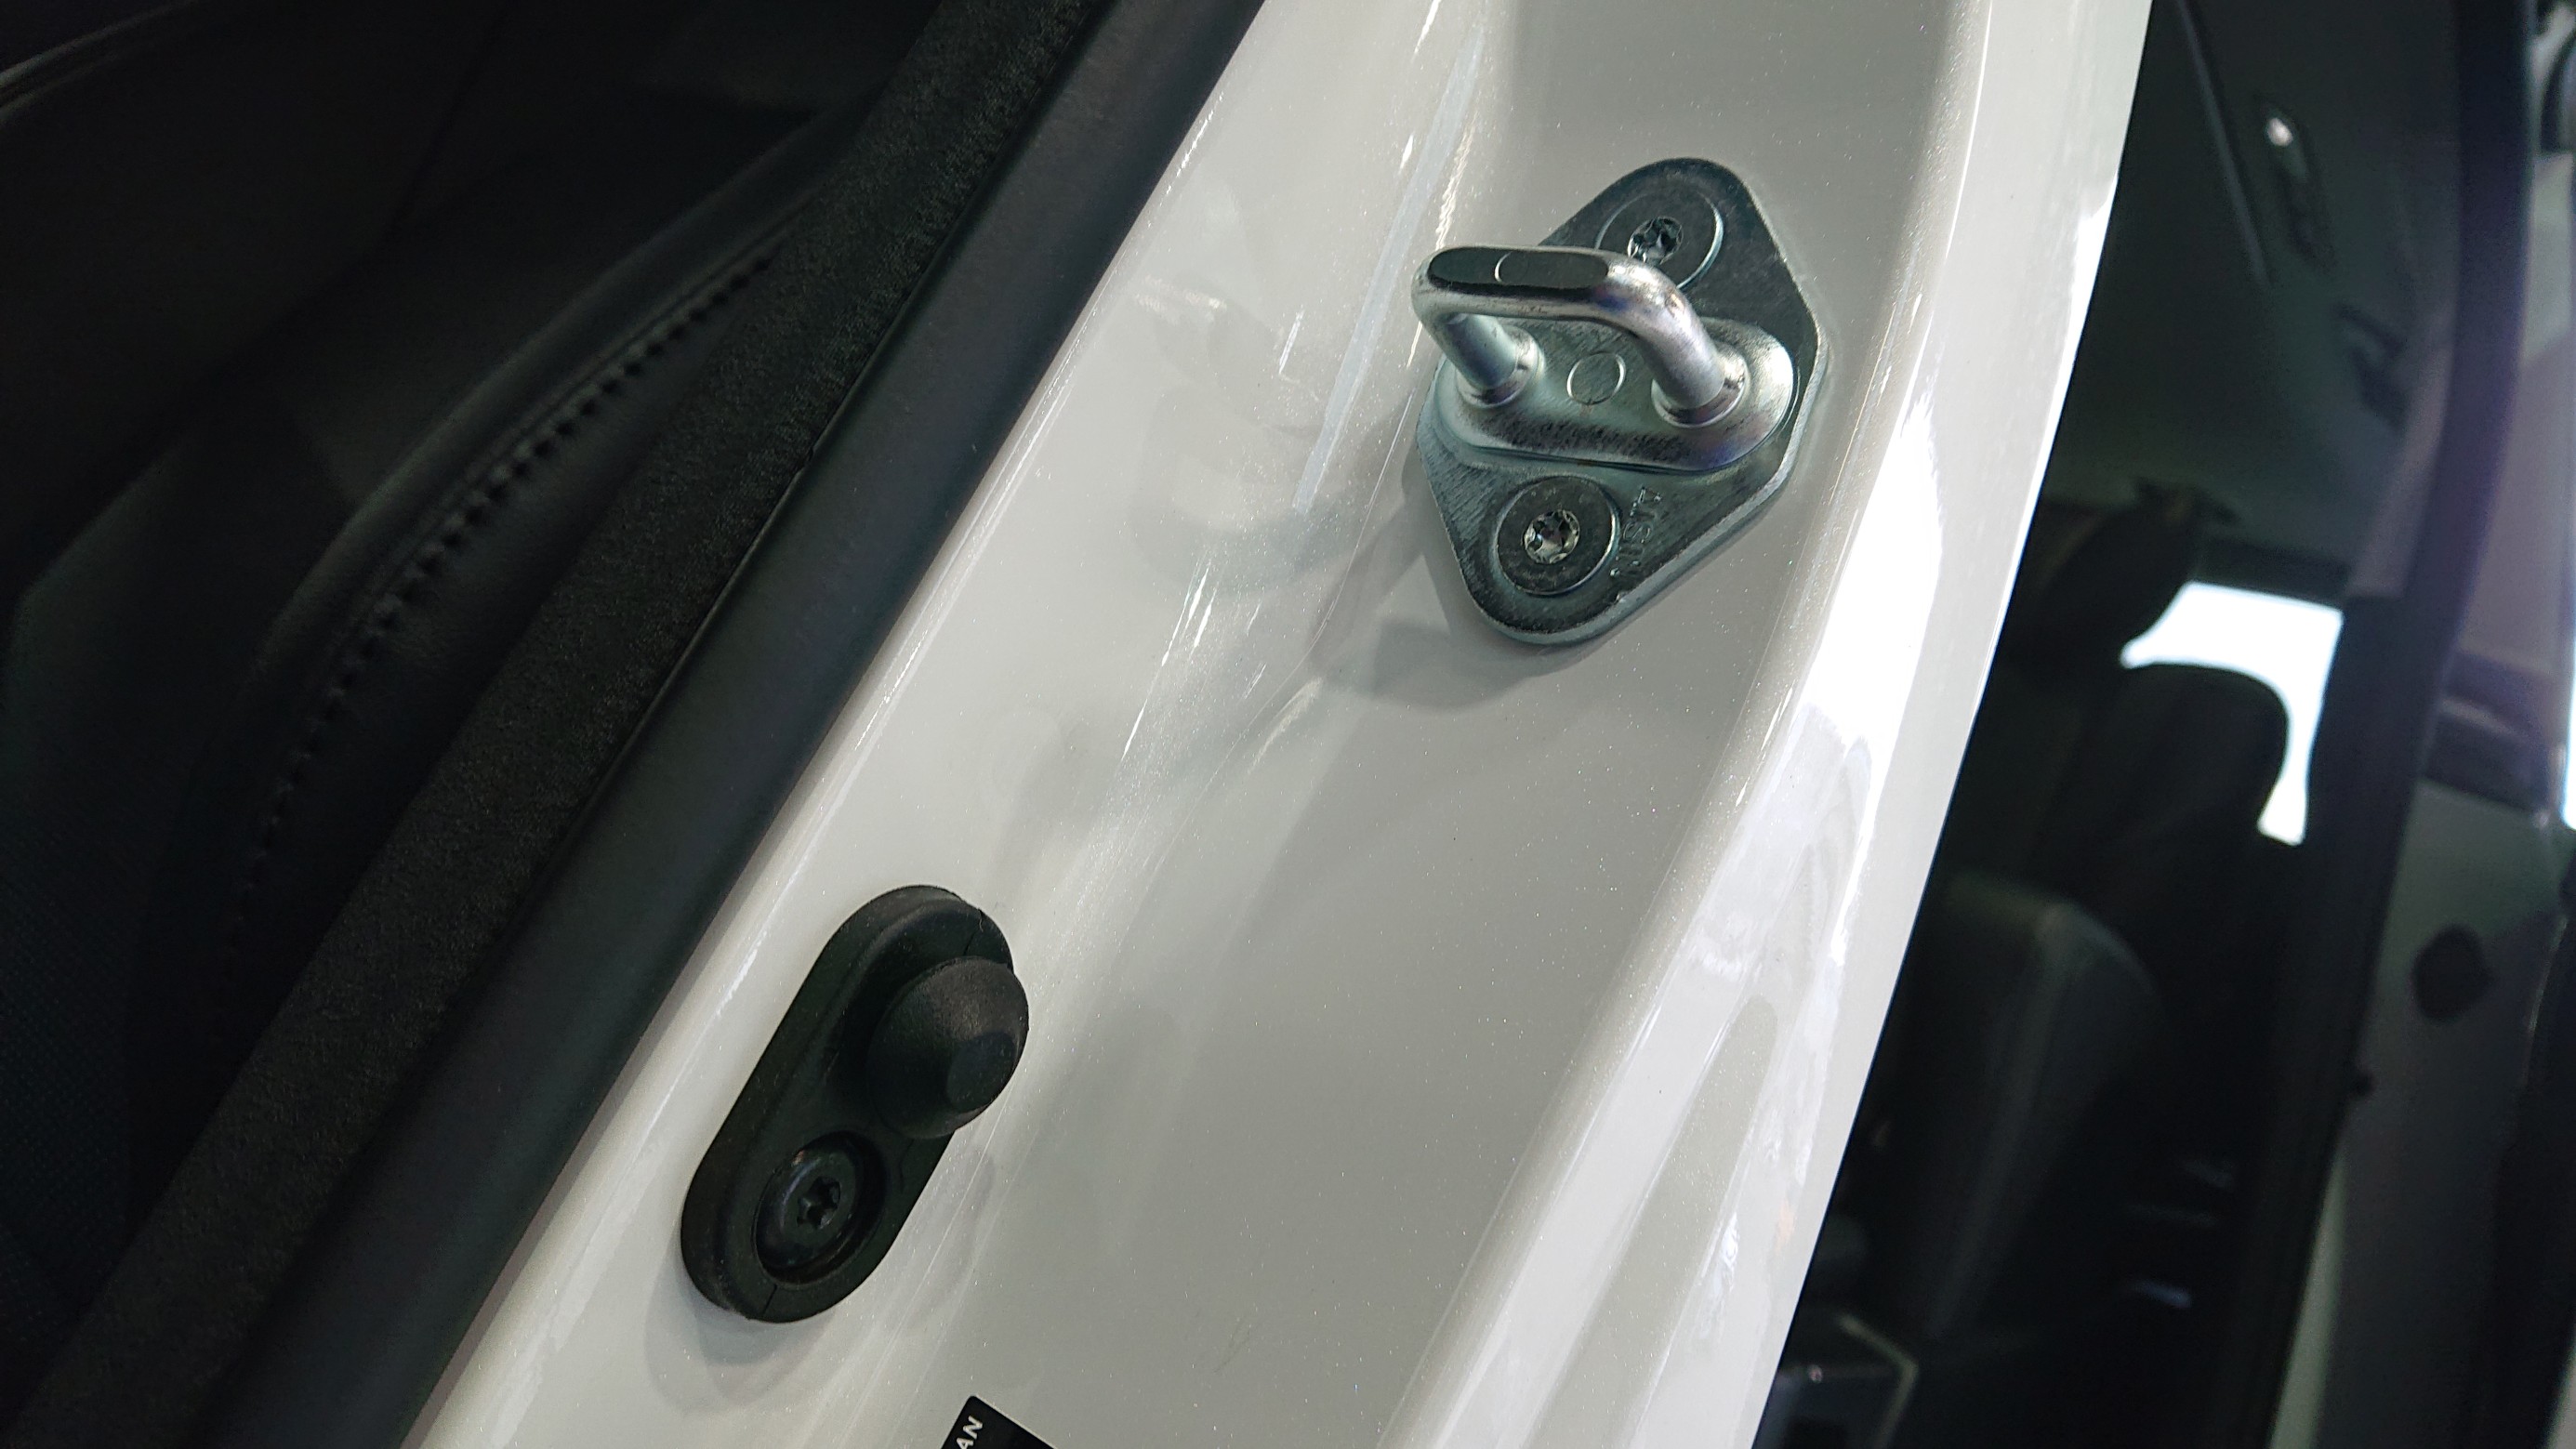 サンダーボルト ジャパン の新商品 鍛造チタニウム M8 ドアストライカーボルト取付作業を5台紹介します レクサス Rc F インテリア Feel Book スタイルコクピット フィール 車のカスタマイズにかかわるスタッフより